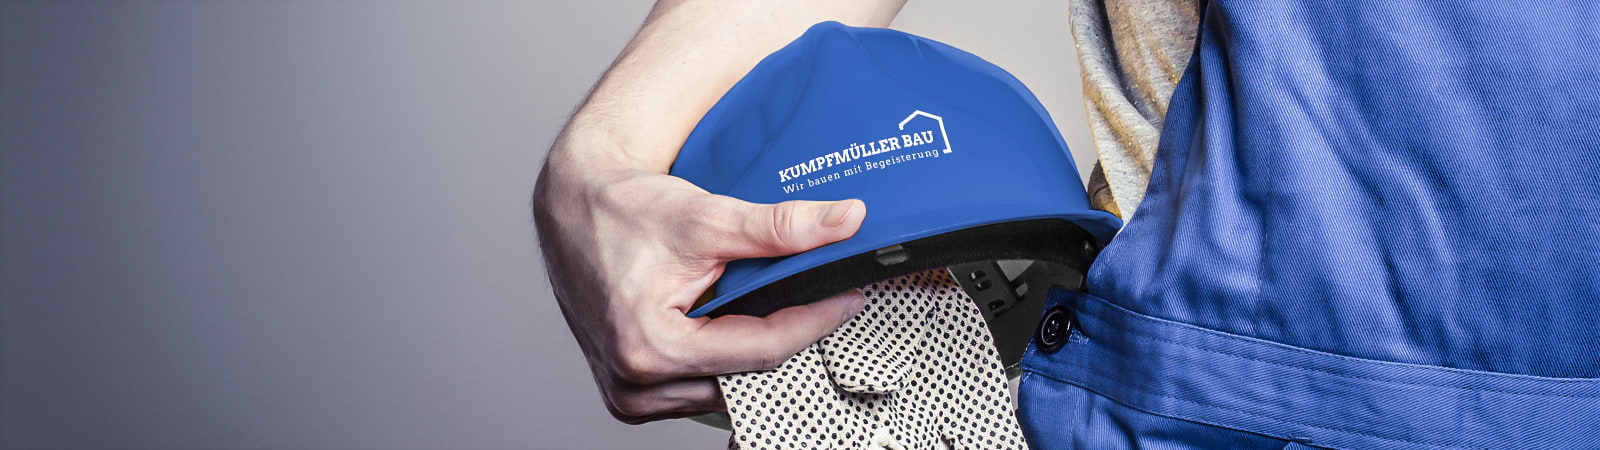 Blauer Helm mit Logo